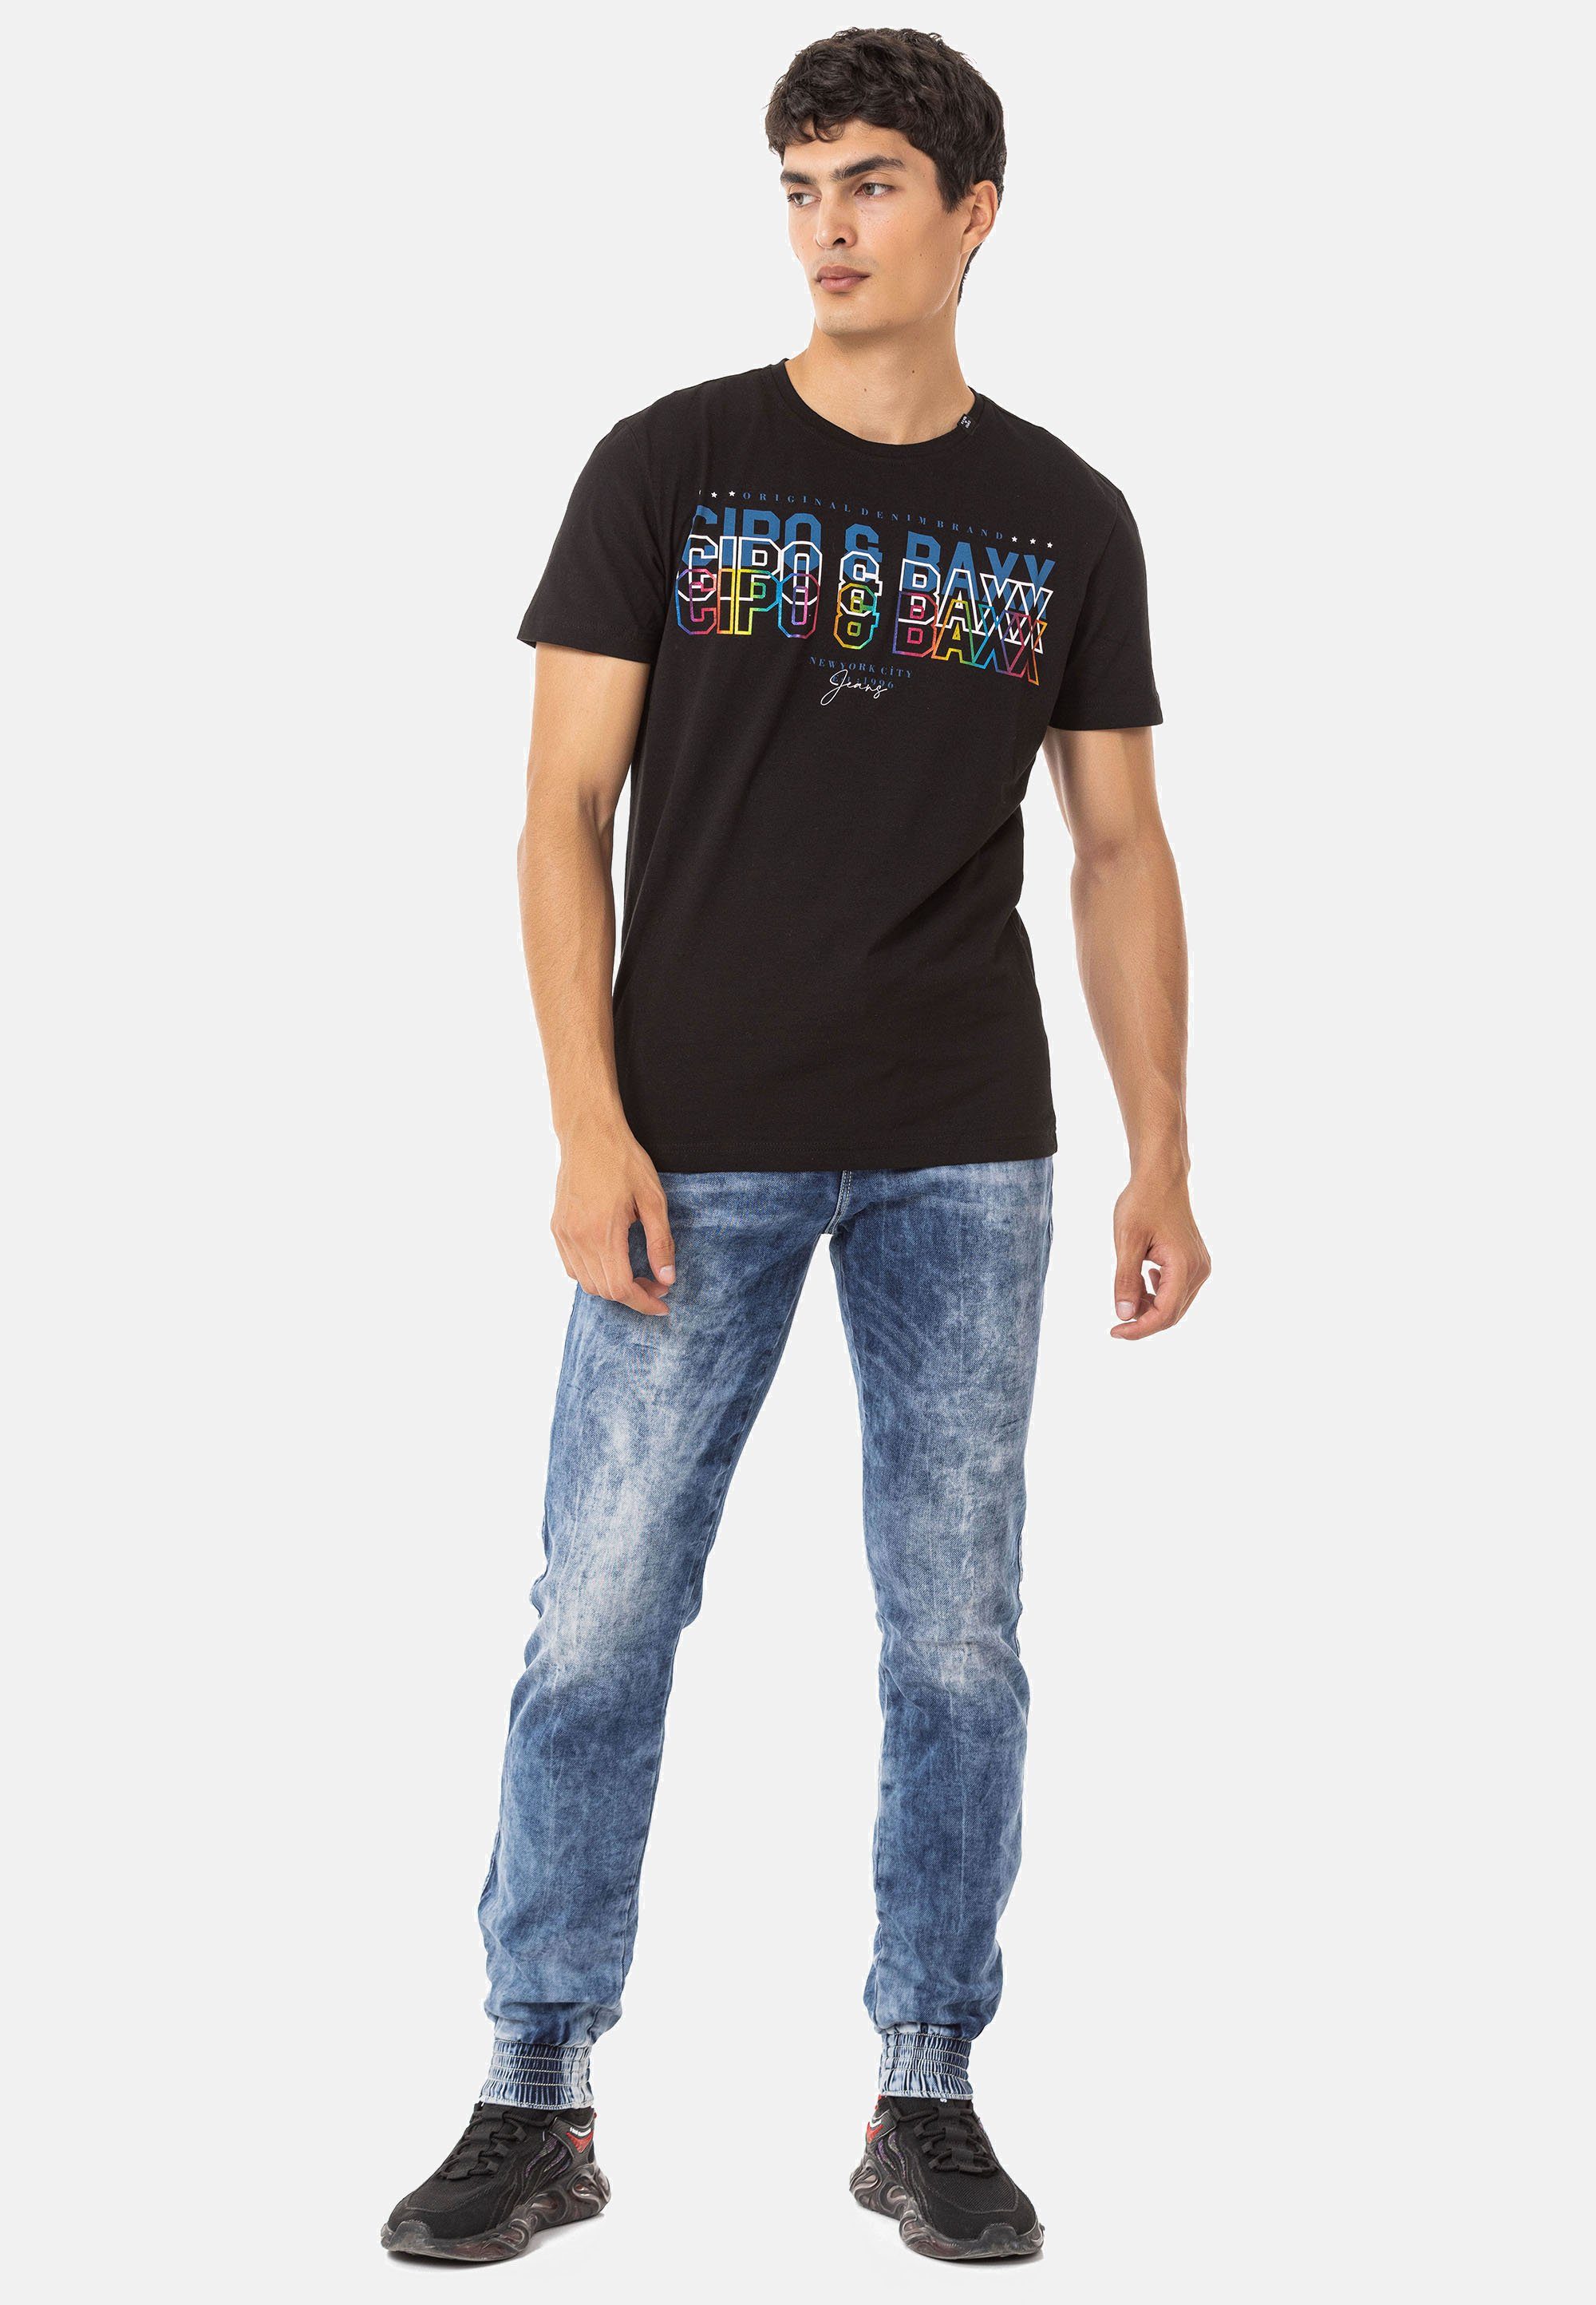 mit Baxx Cipo Markenprint schwarz T-Shirt & trendigem CT717